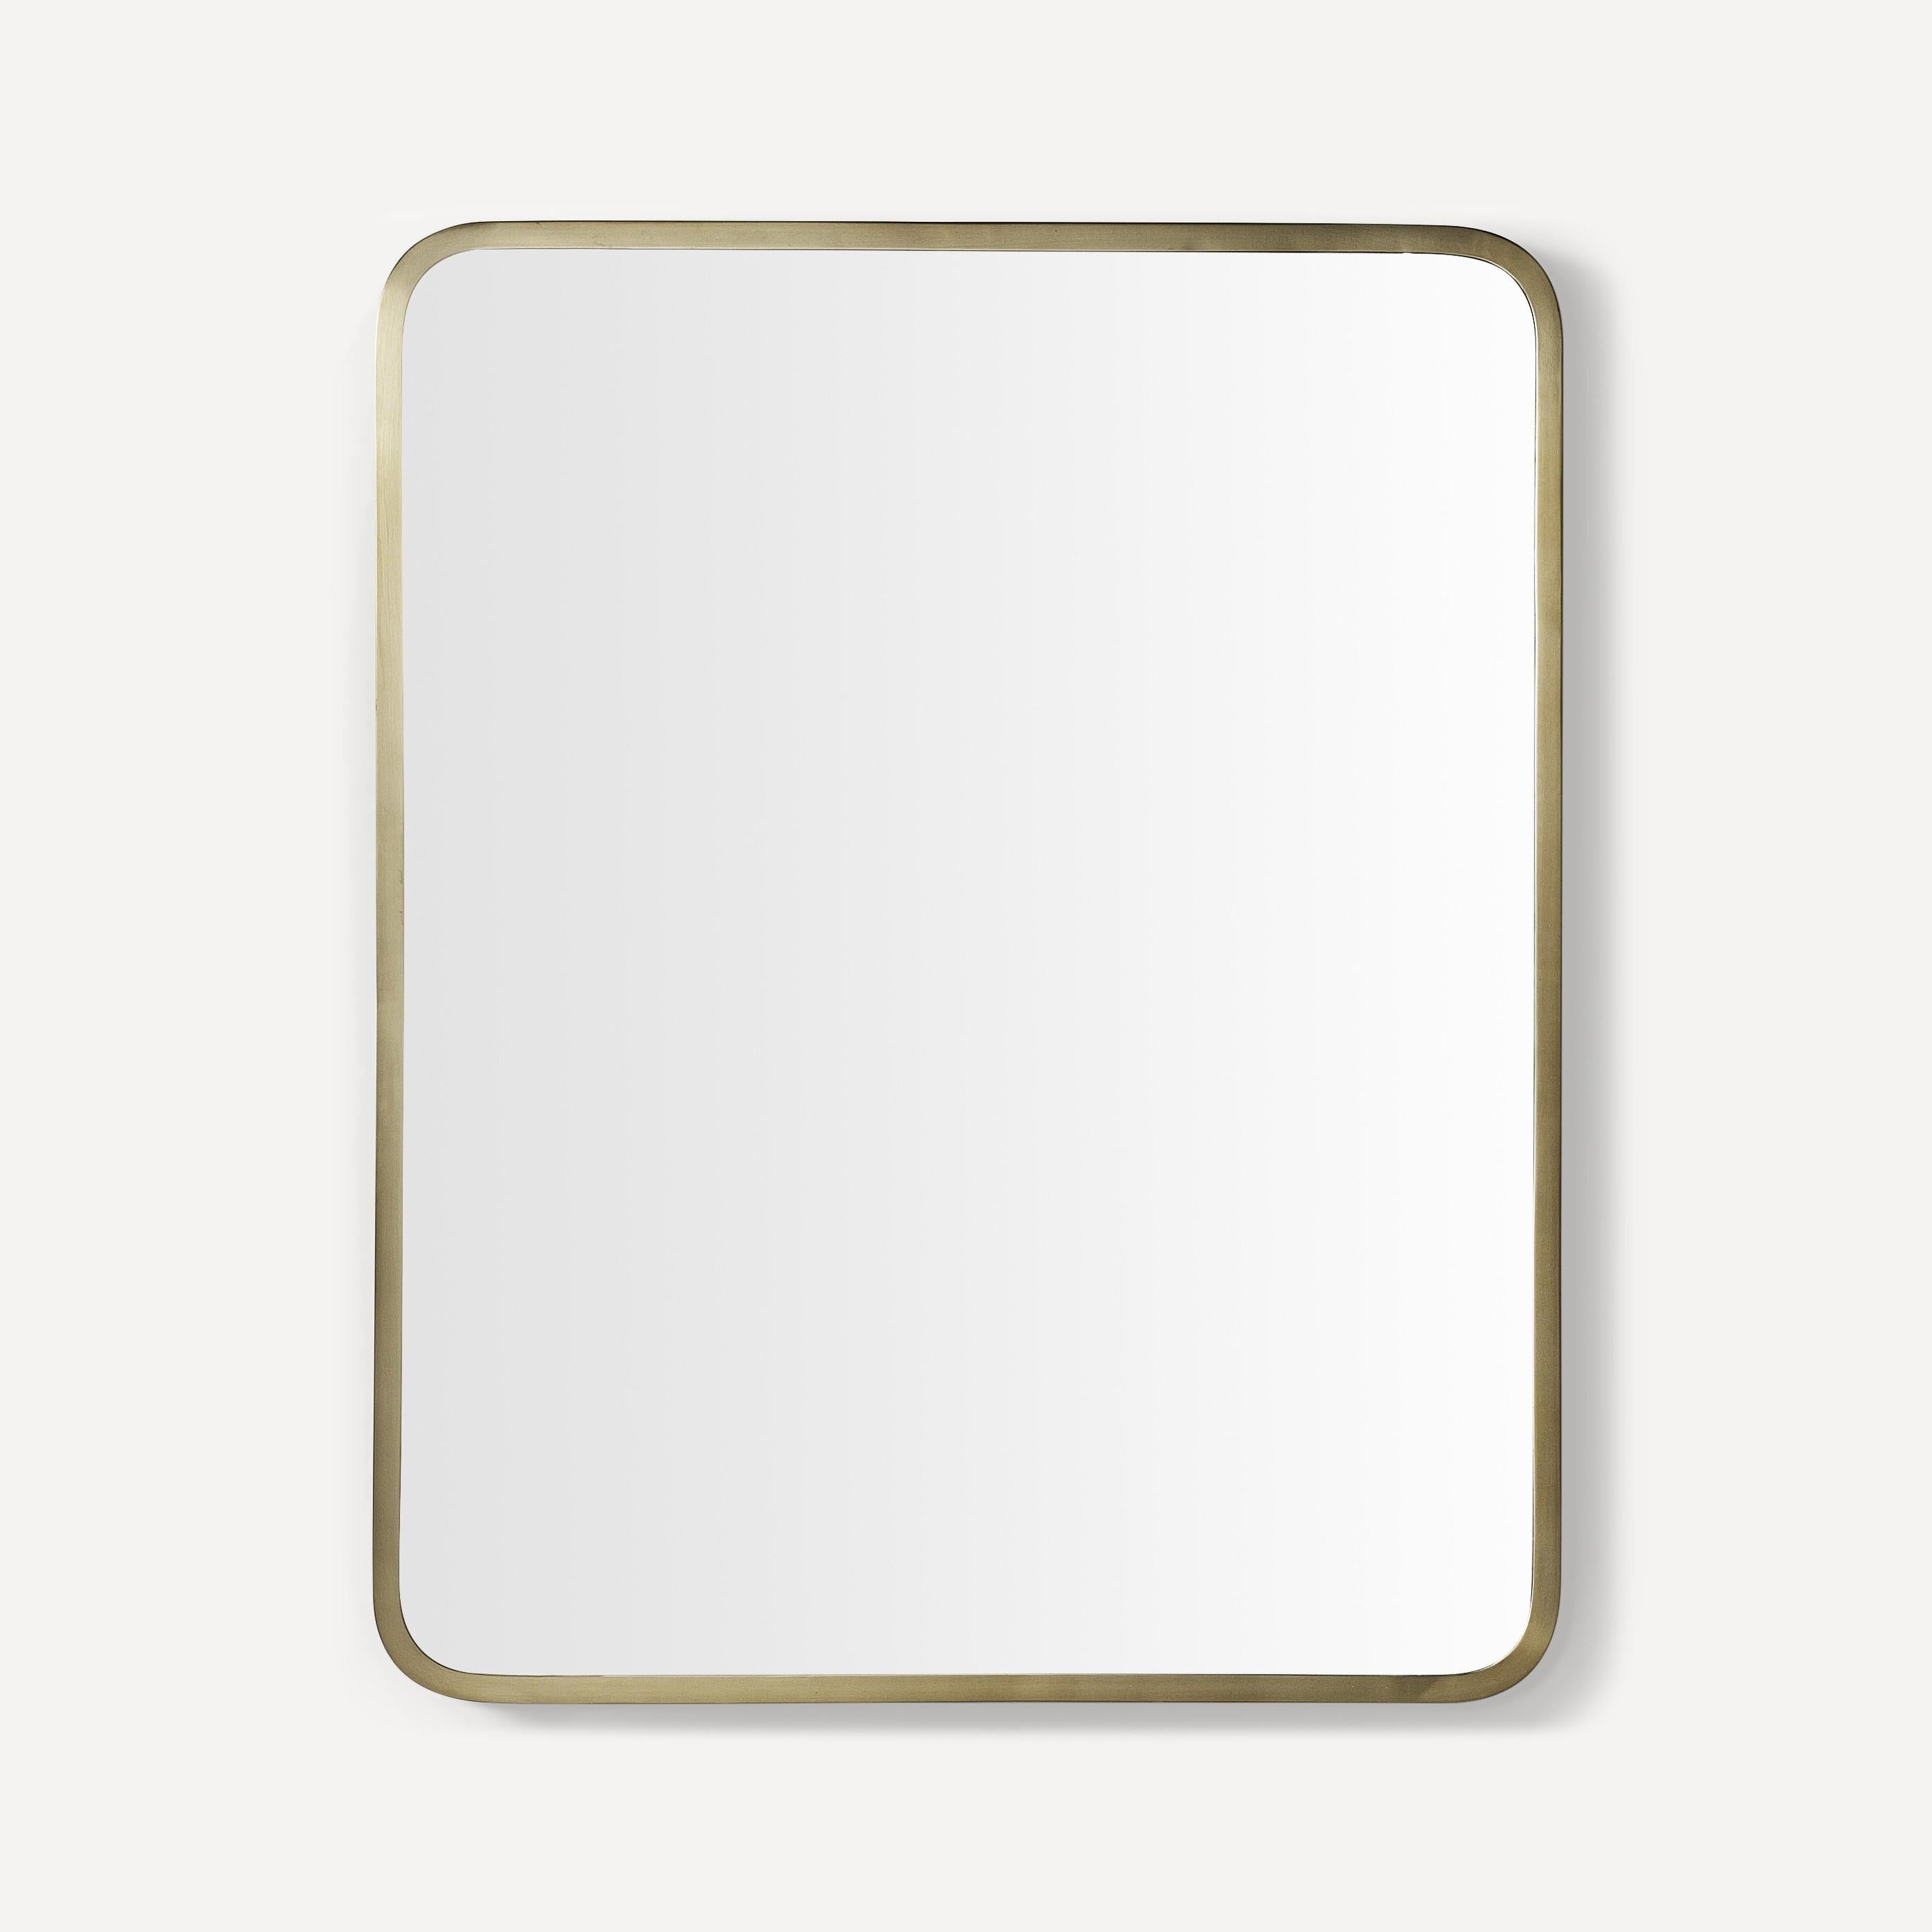 Robern Round Corner Metal Mirror, 24"x 30"x 15/16"